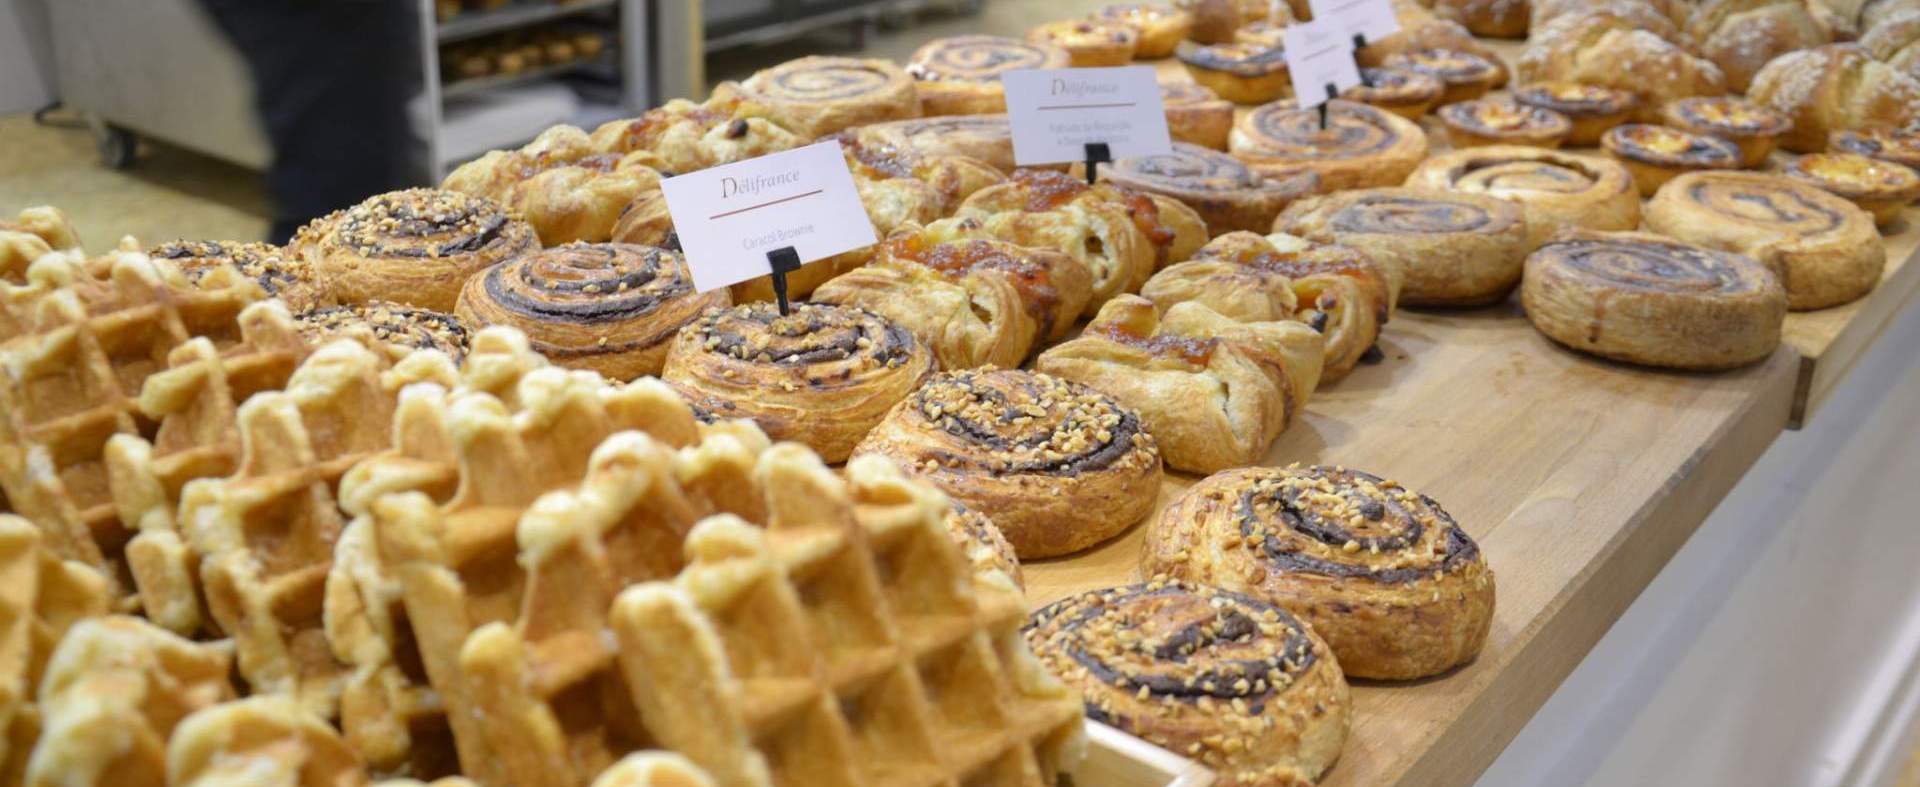 Le salon de référence de l'industrie de la boulangerie et de la pâtisserie se termine avec la pleine satisfaction des exposants.